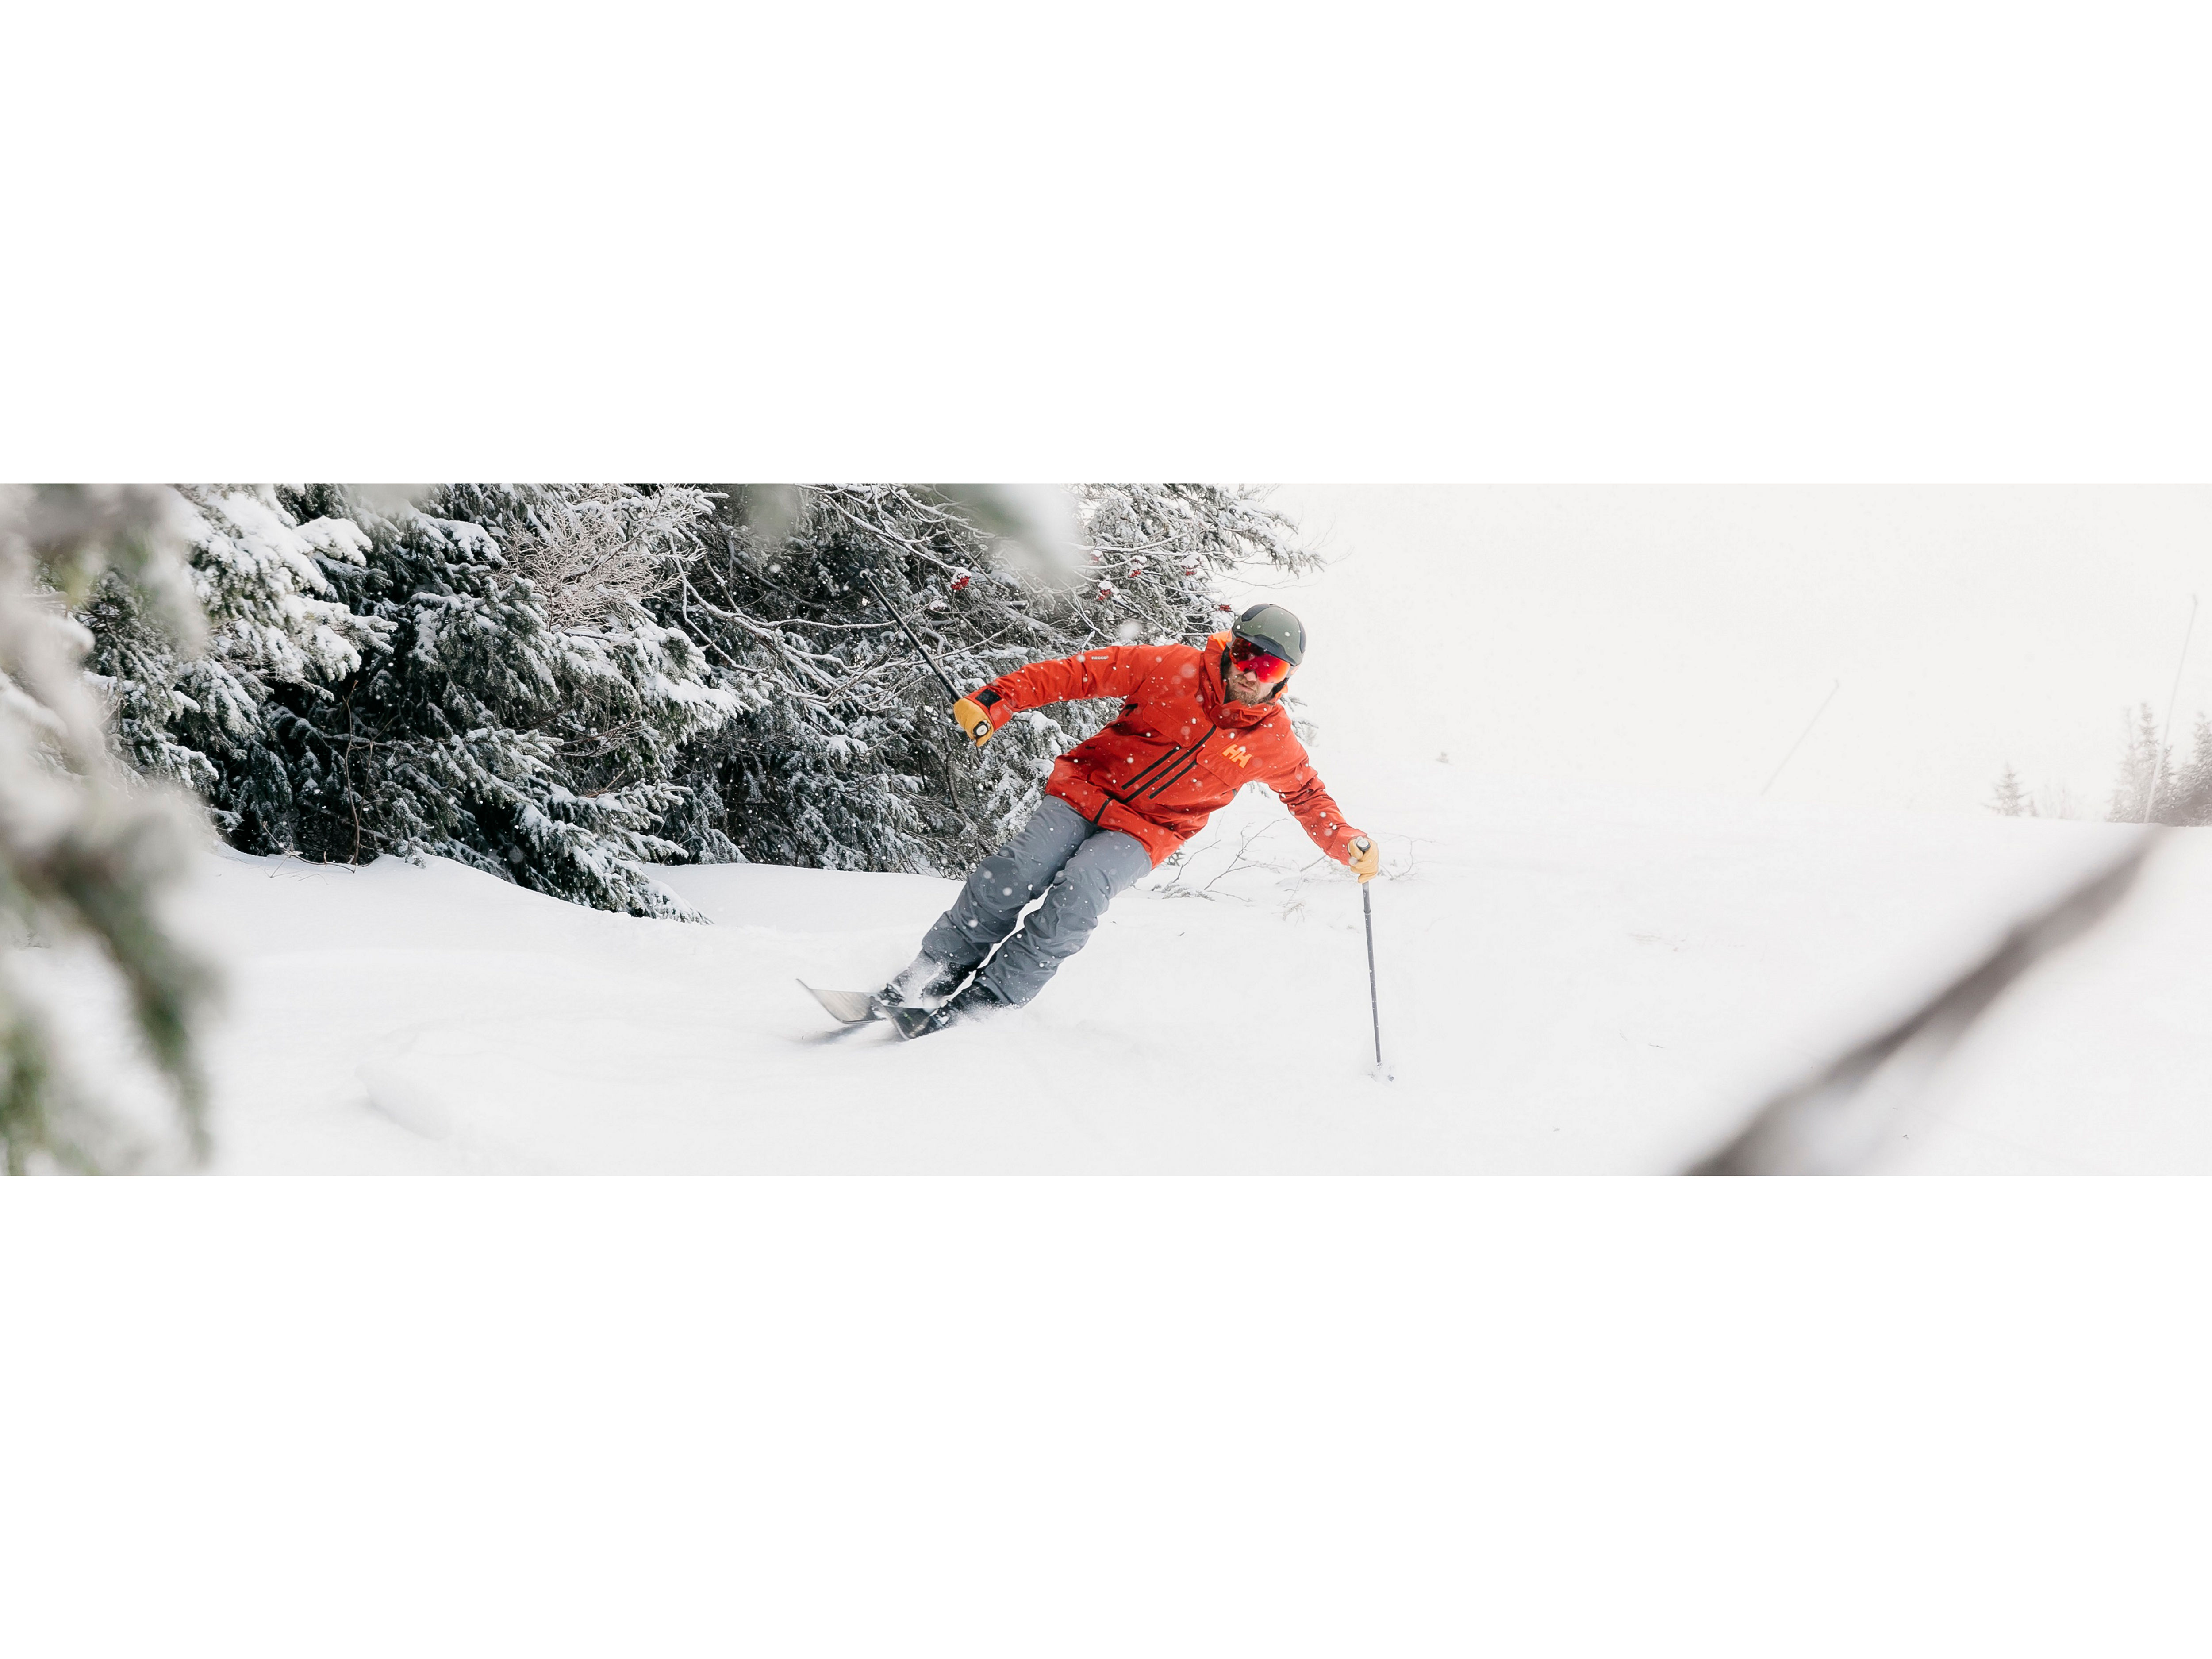 Luxury Ski and Snowboard Gear - Best Ski Gear to Buy 2021